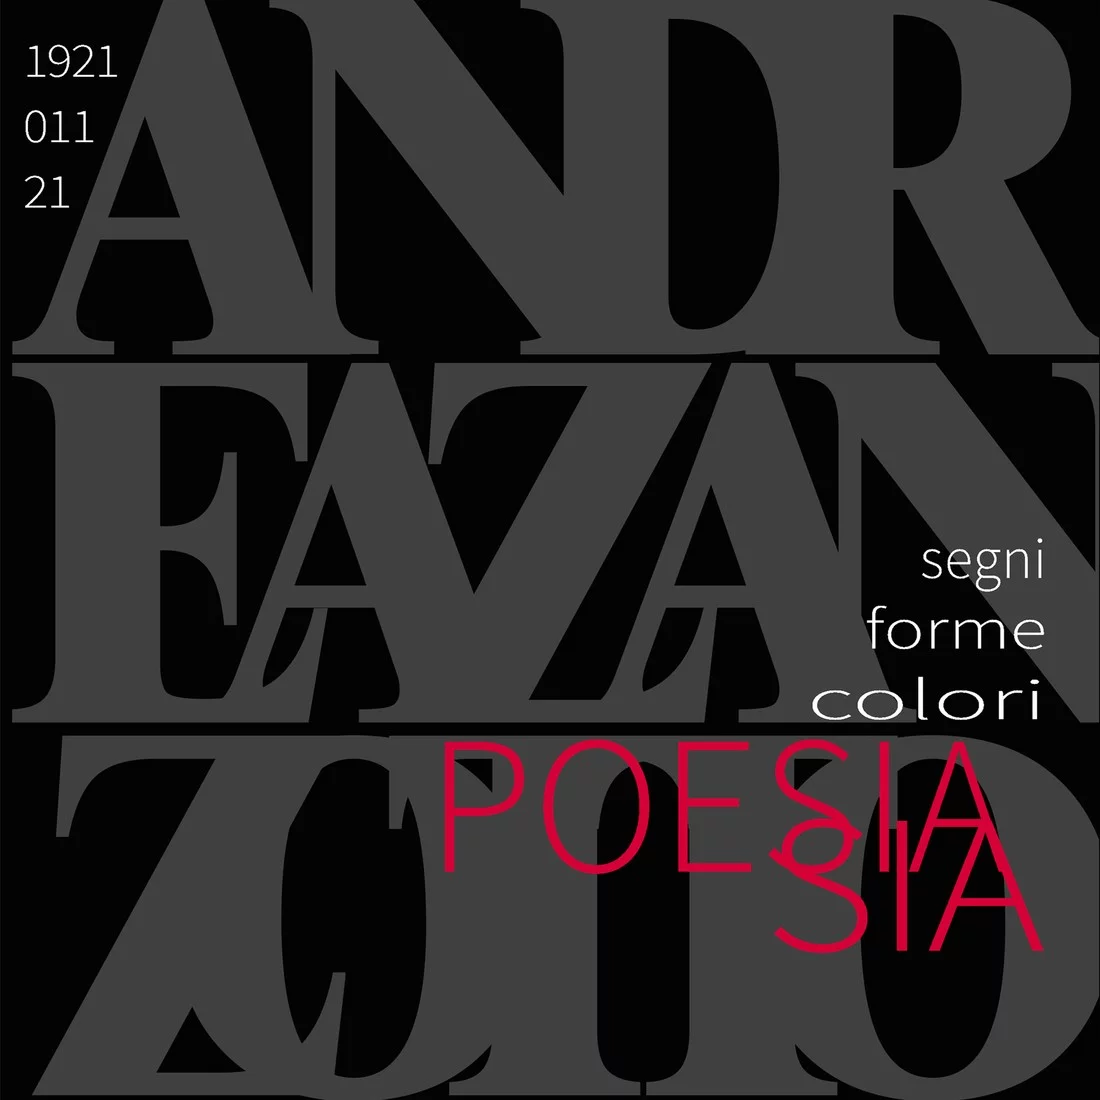 Zanzotto - segni, forme, colori..... Poesia